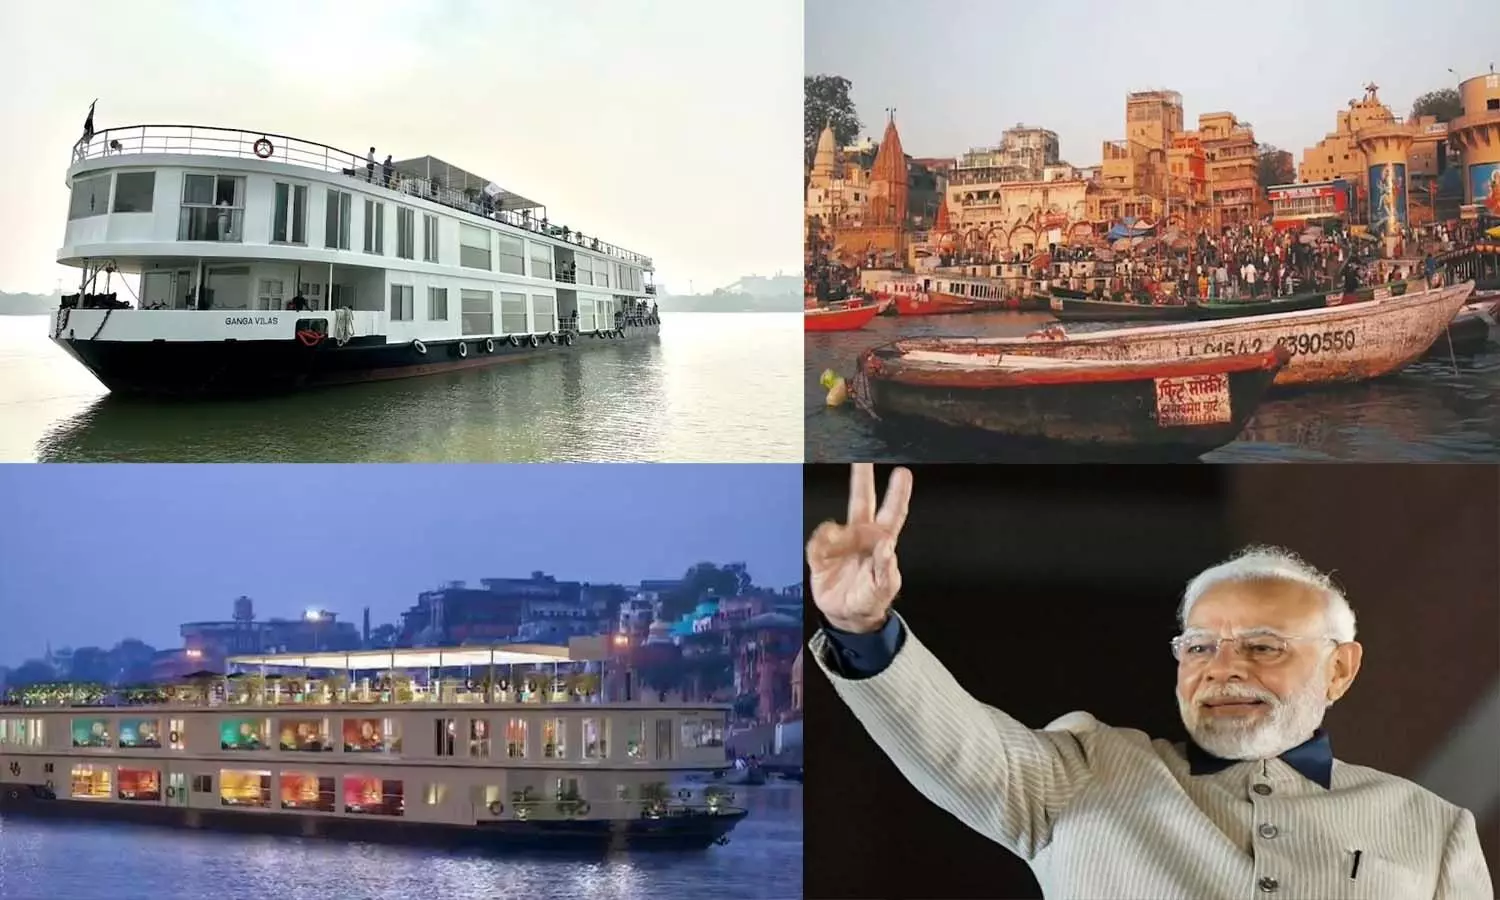 Ganga Vilas Cruise: गंगा तथा ब्रह्मपुत्र नदी प्रणालियों से जुड़े विभिन्न संस्कृतियों तथा धार्मिक एवं विश्व विरासत स्थलों को जोड़ता गंगा विलास क्रूज